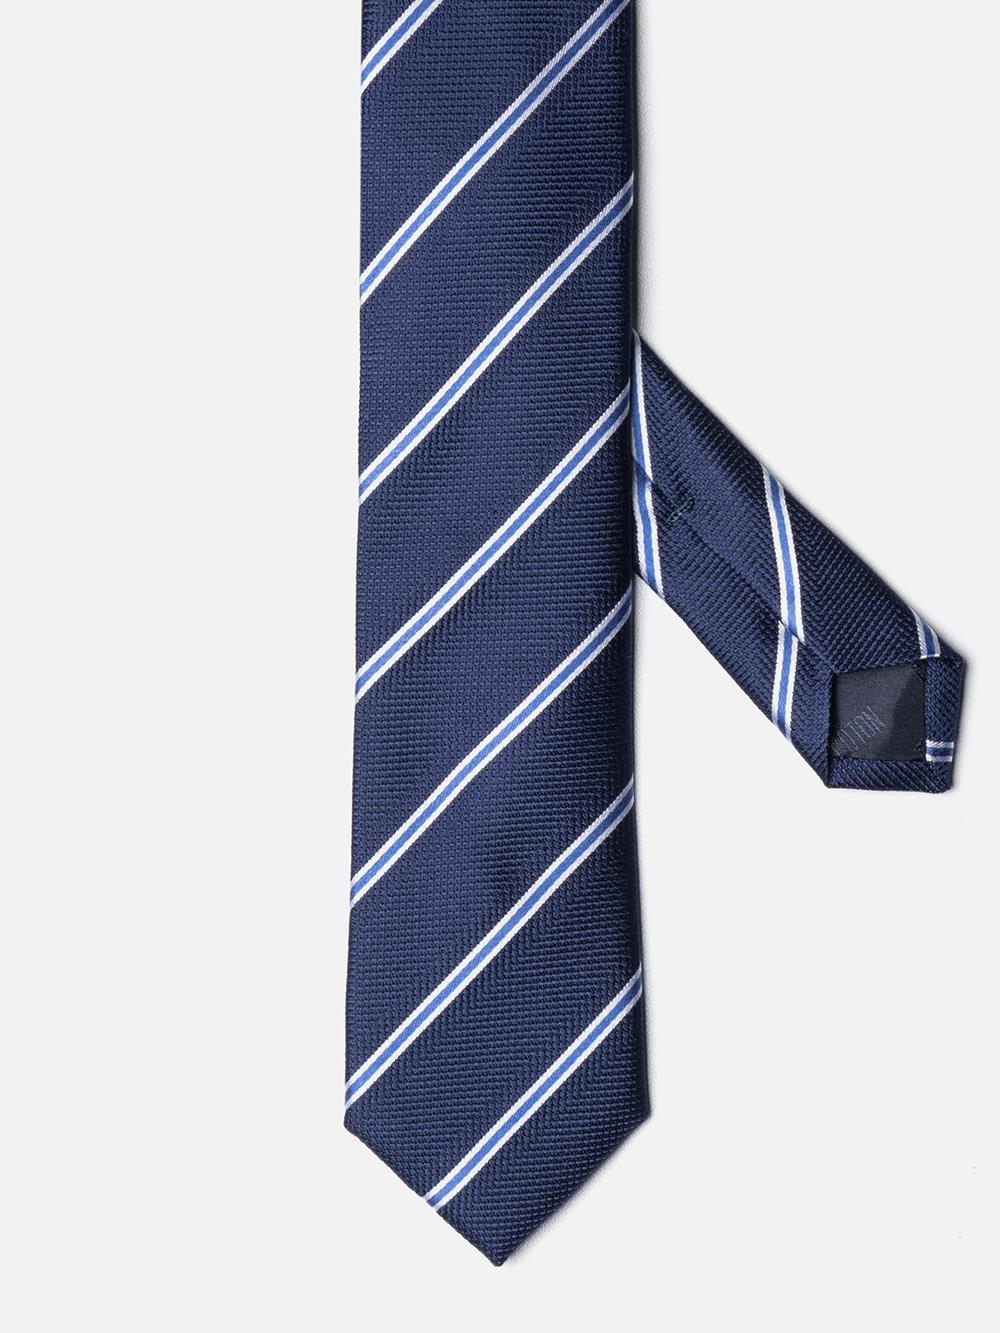 Navy silk slim tie with sky stripes